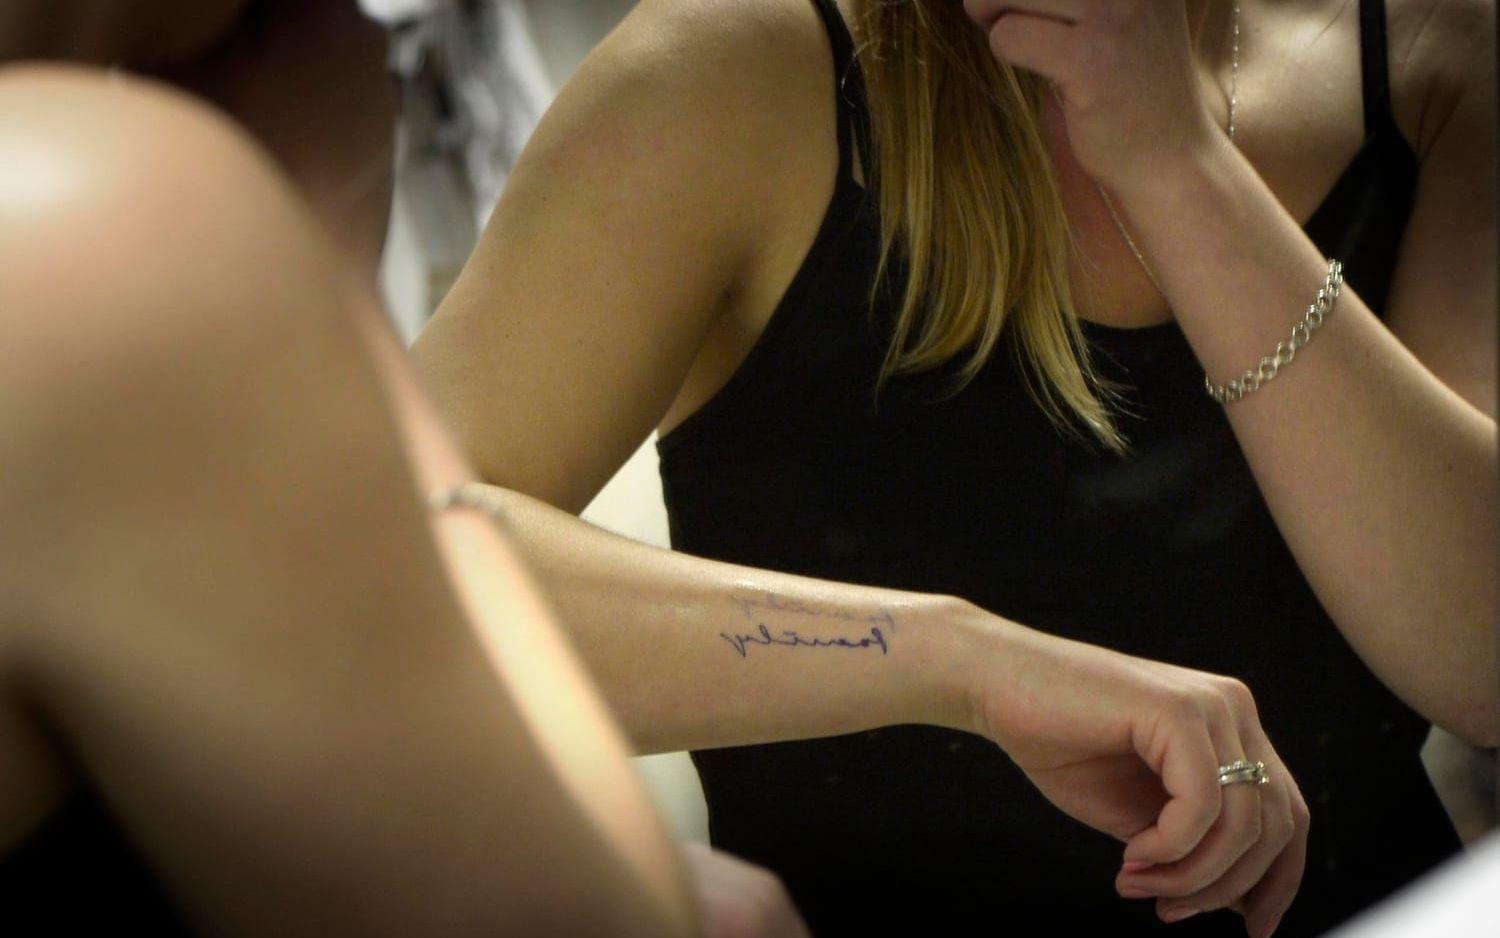 Det är debut för Petra Johansson. Hon ska göra sin första tatuering. – Jag har tänkt på det länge och nu ska det bli av, säger hon.